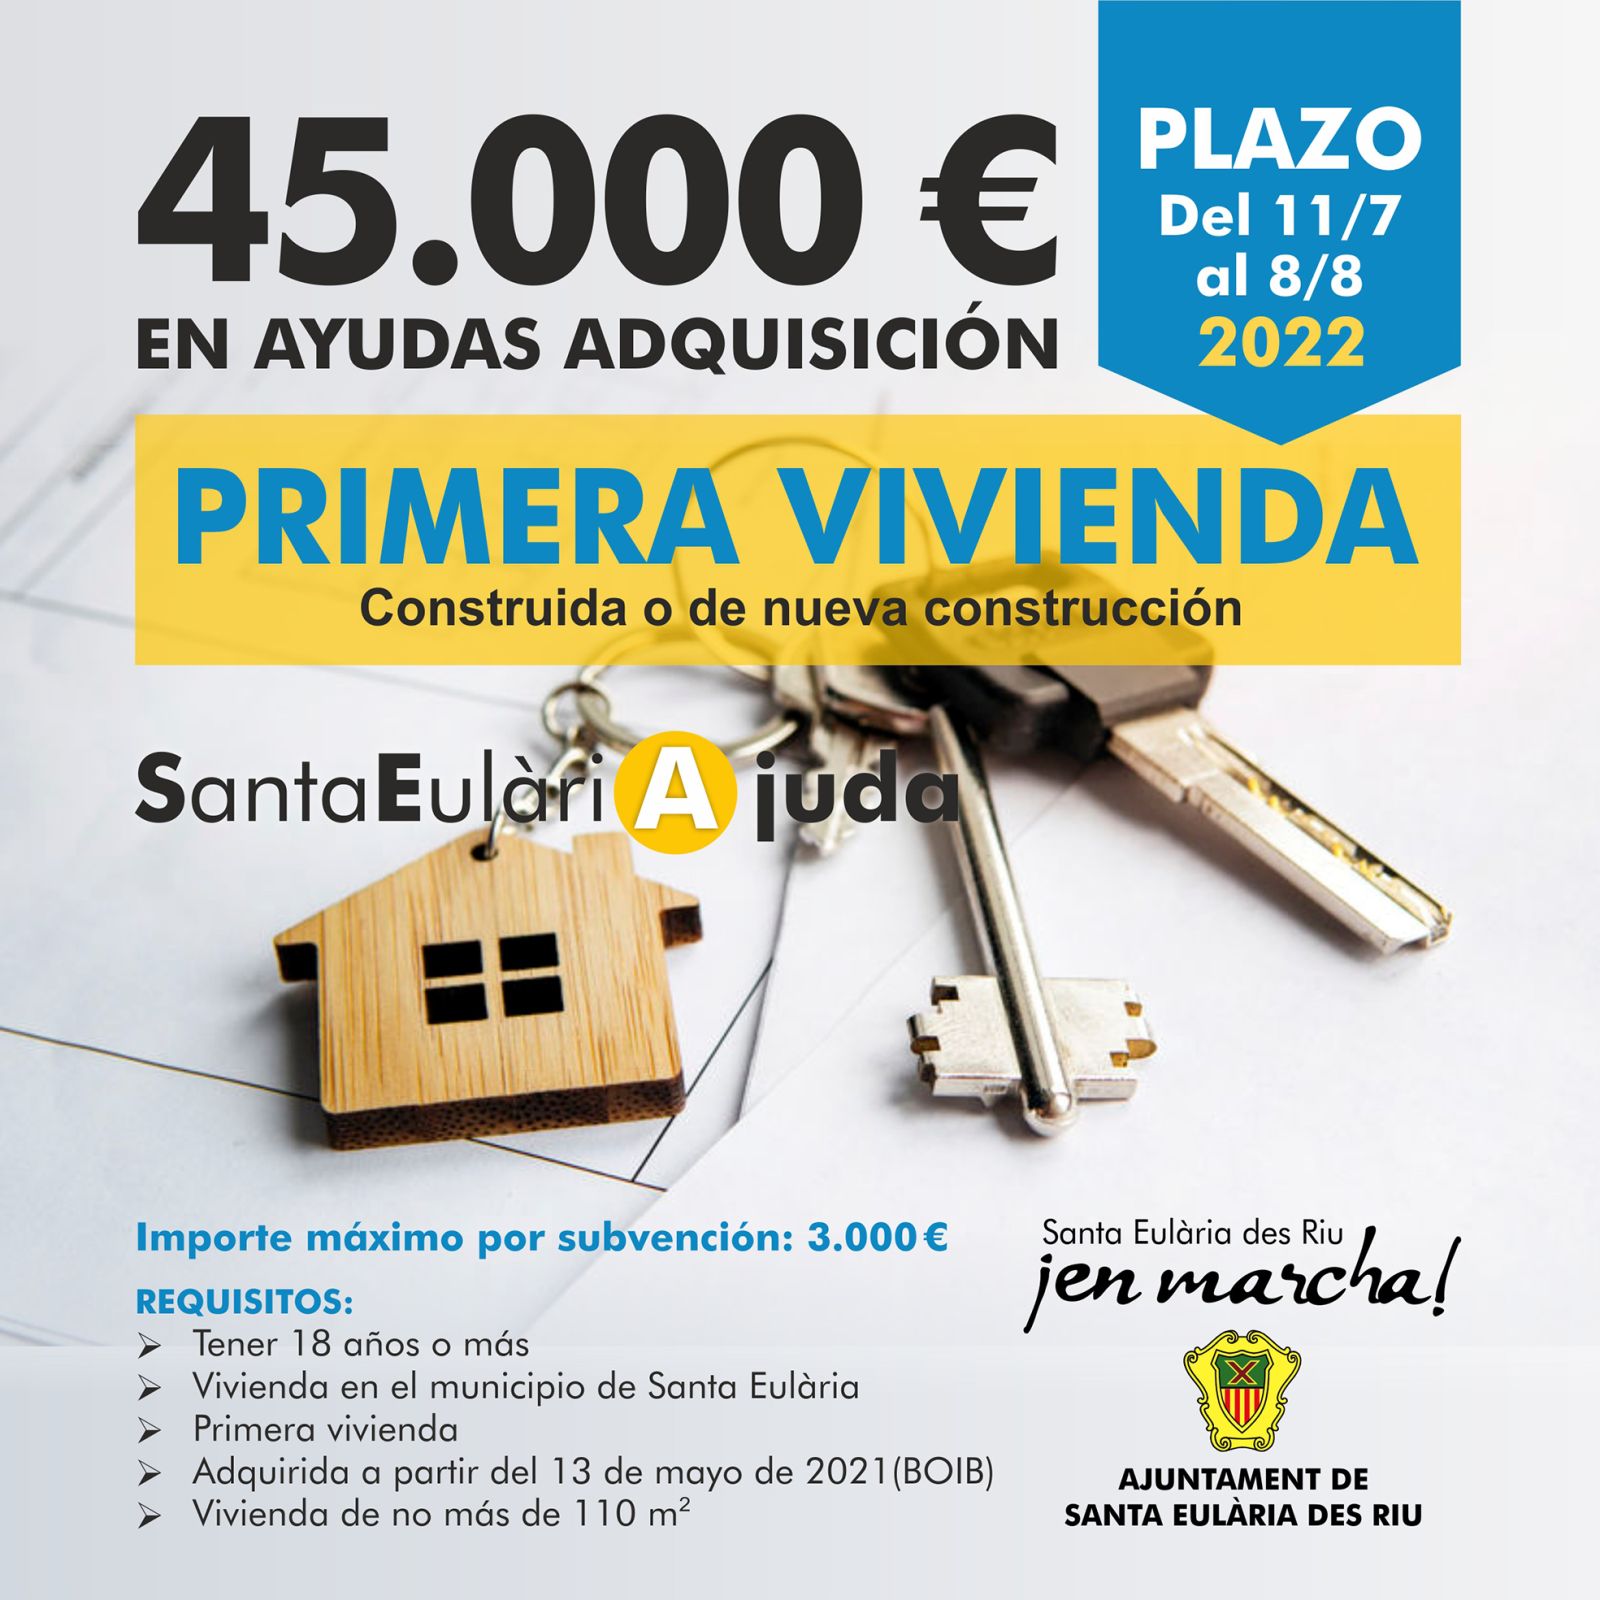 El Ayuntamiento de Santa Eulària des Riu ofrece ayudas de 3.000 euros para aliviar los gastos derivados de la compra de la primera vivienda